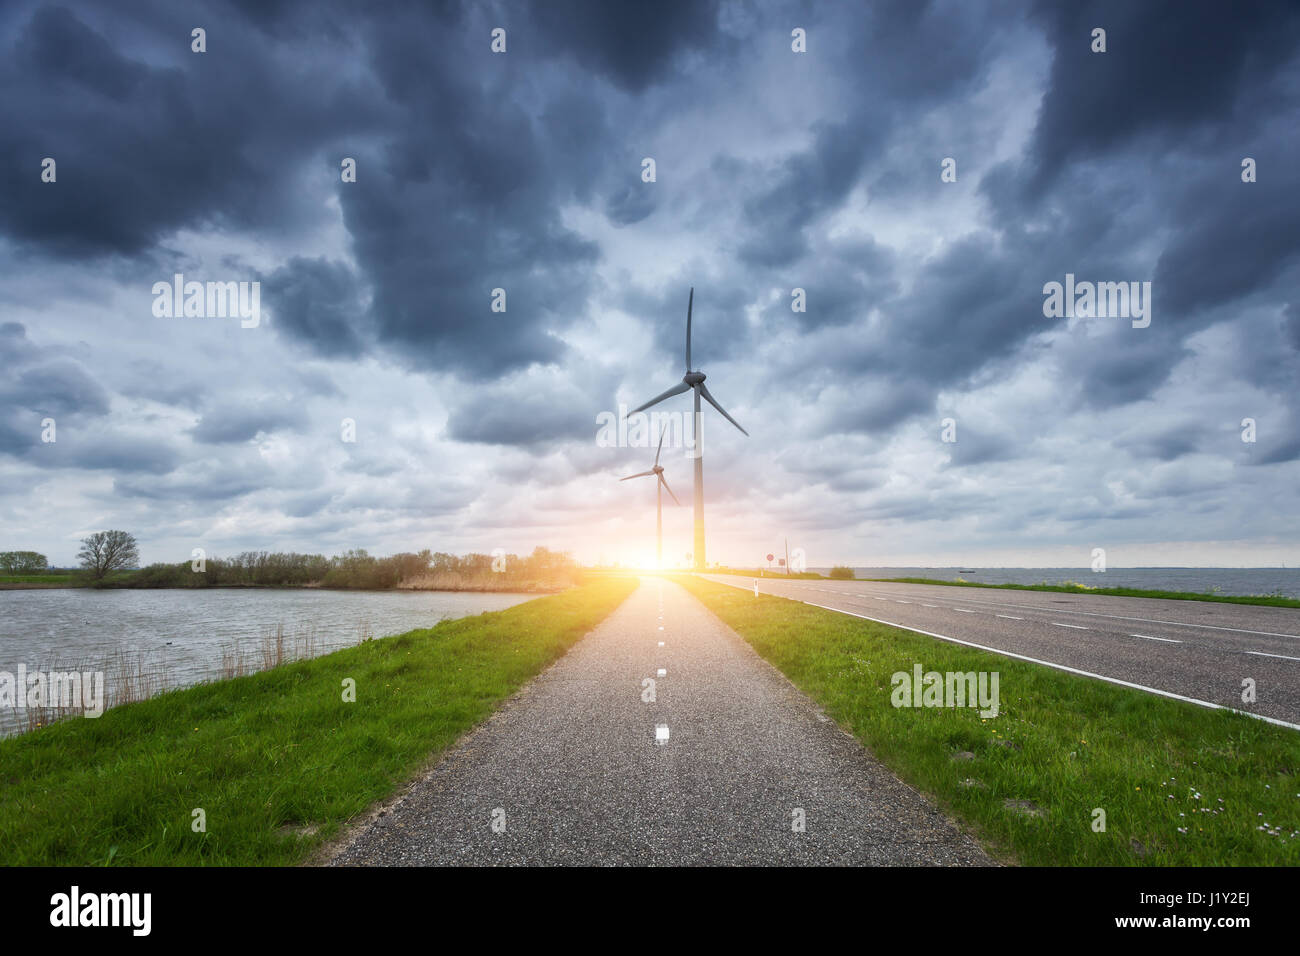 Schöne asphaltierte Straße mit Windkraftanlagen zur Stromerzeugung bei Sonnenuntergang. Windmühlen zur Stromerzeugung. Landschaft mit Strasse, grünen Rasen Stockfoto